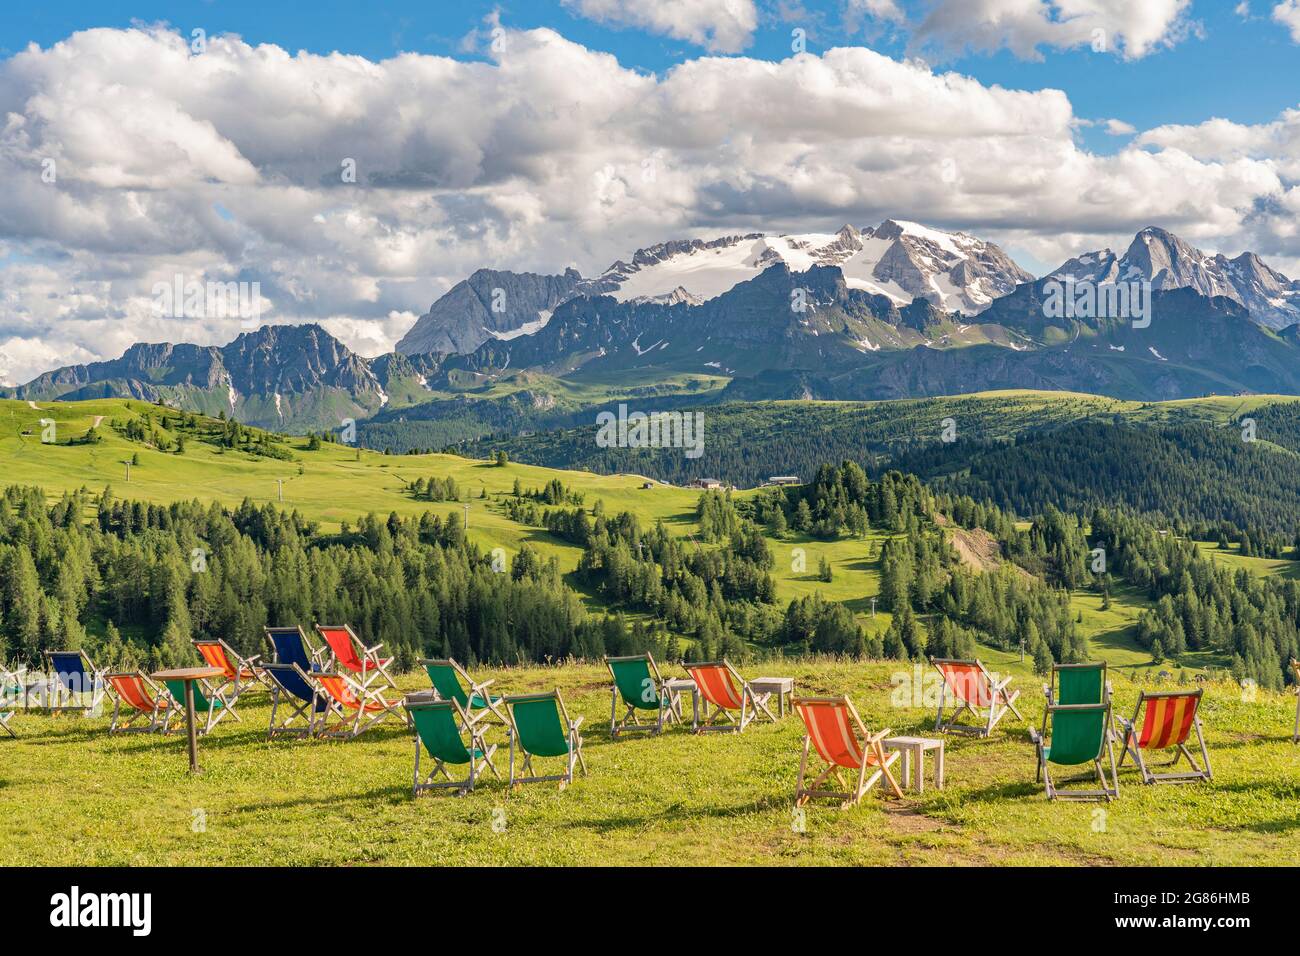 Splendido paesaggio dell'Altopiano Pralongia nelle Dolomiti dell'alta Badia con la splendida vetta del Sasso die Santa Cruce, del Tirolo del Sud e del Trentino Foto Stock